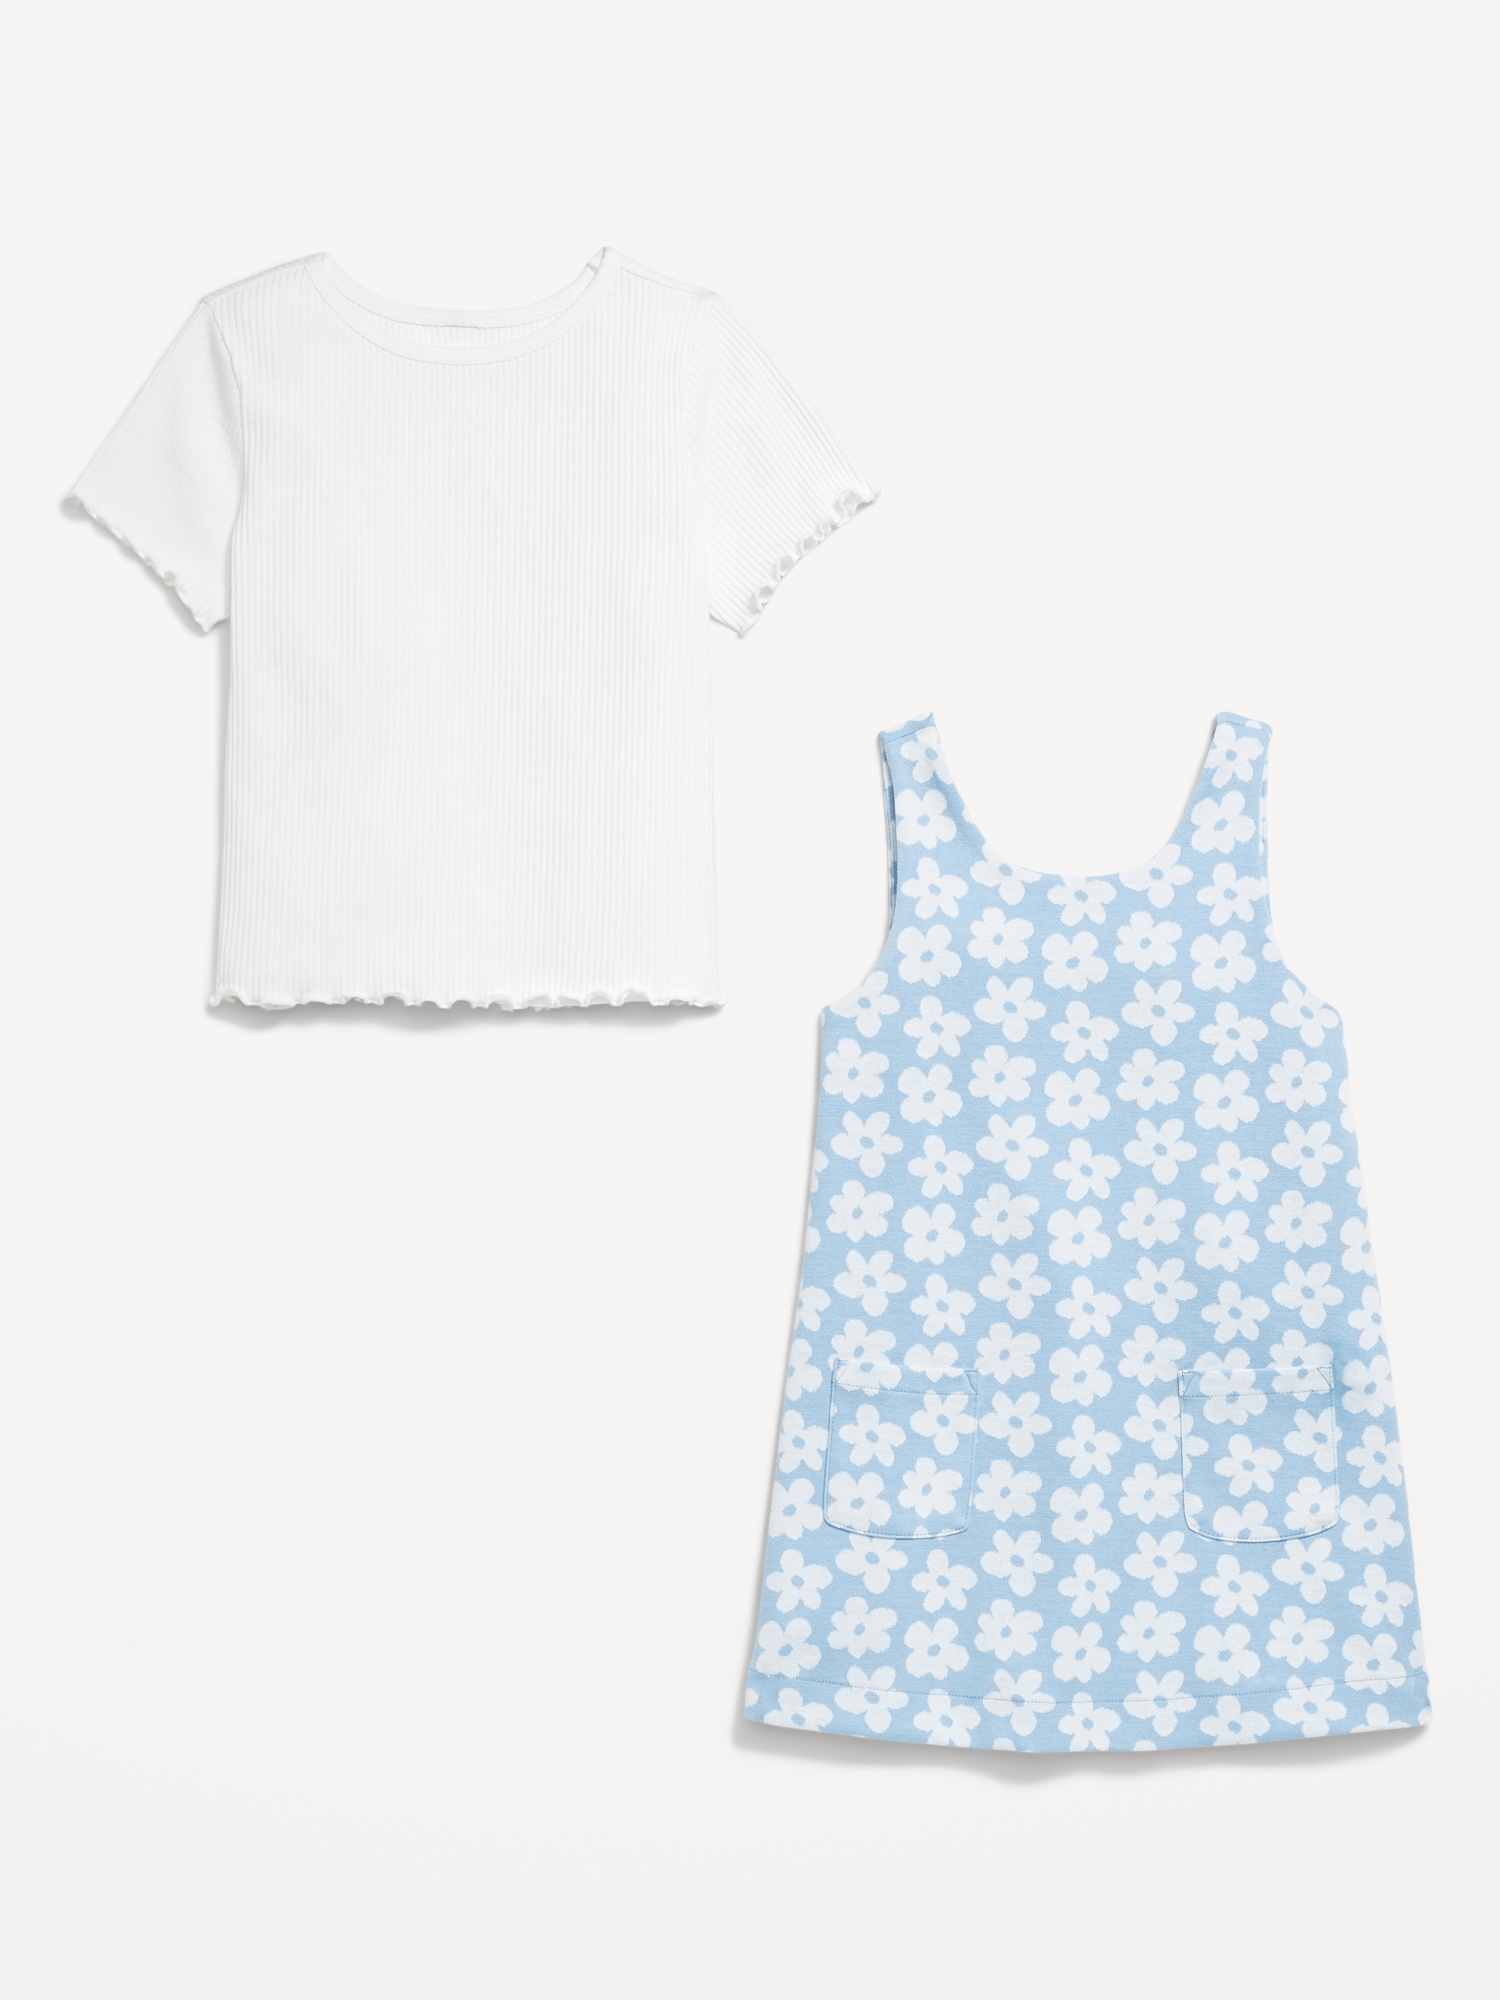 Sleeveless Pocket Dress and T-Shirt Set for Toddler Girls